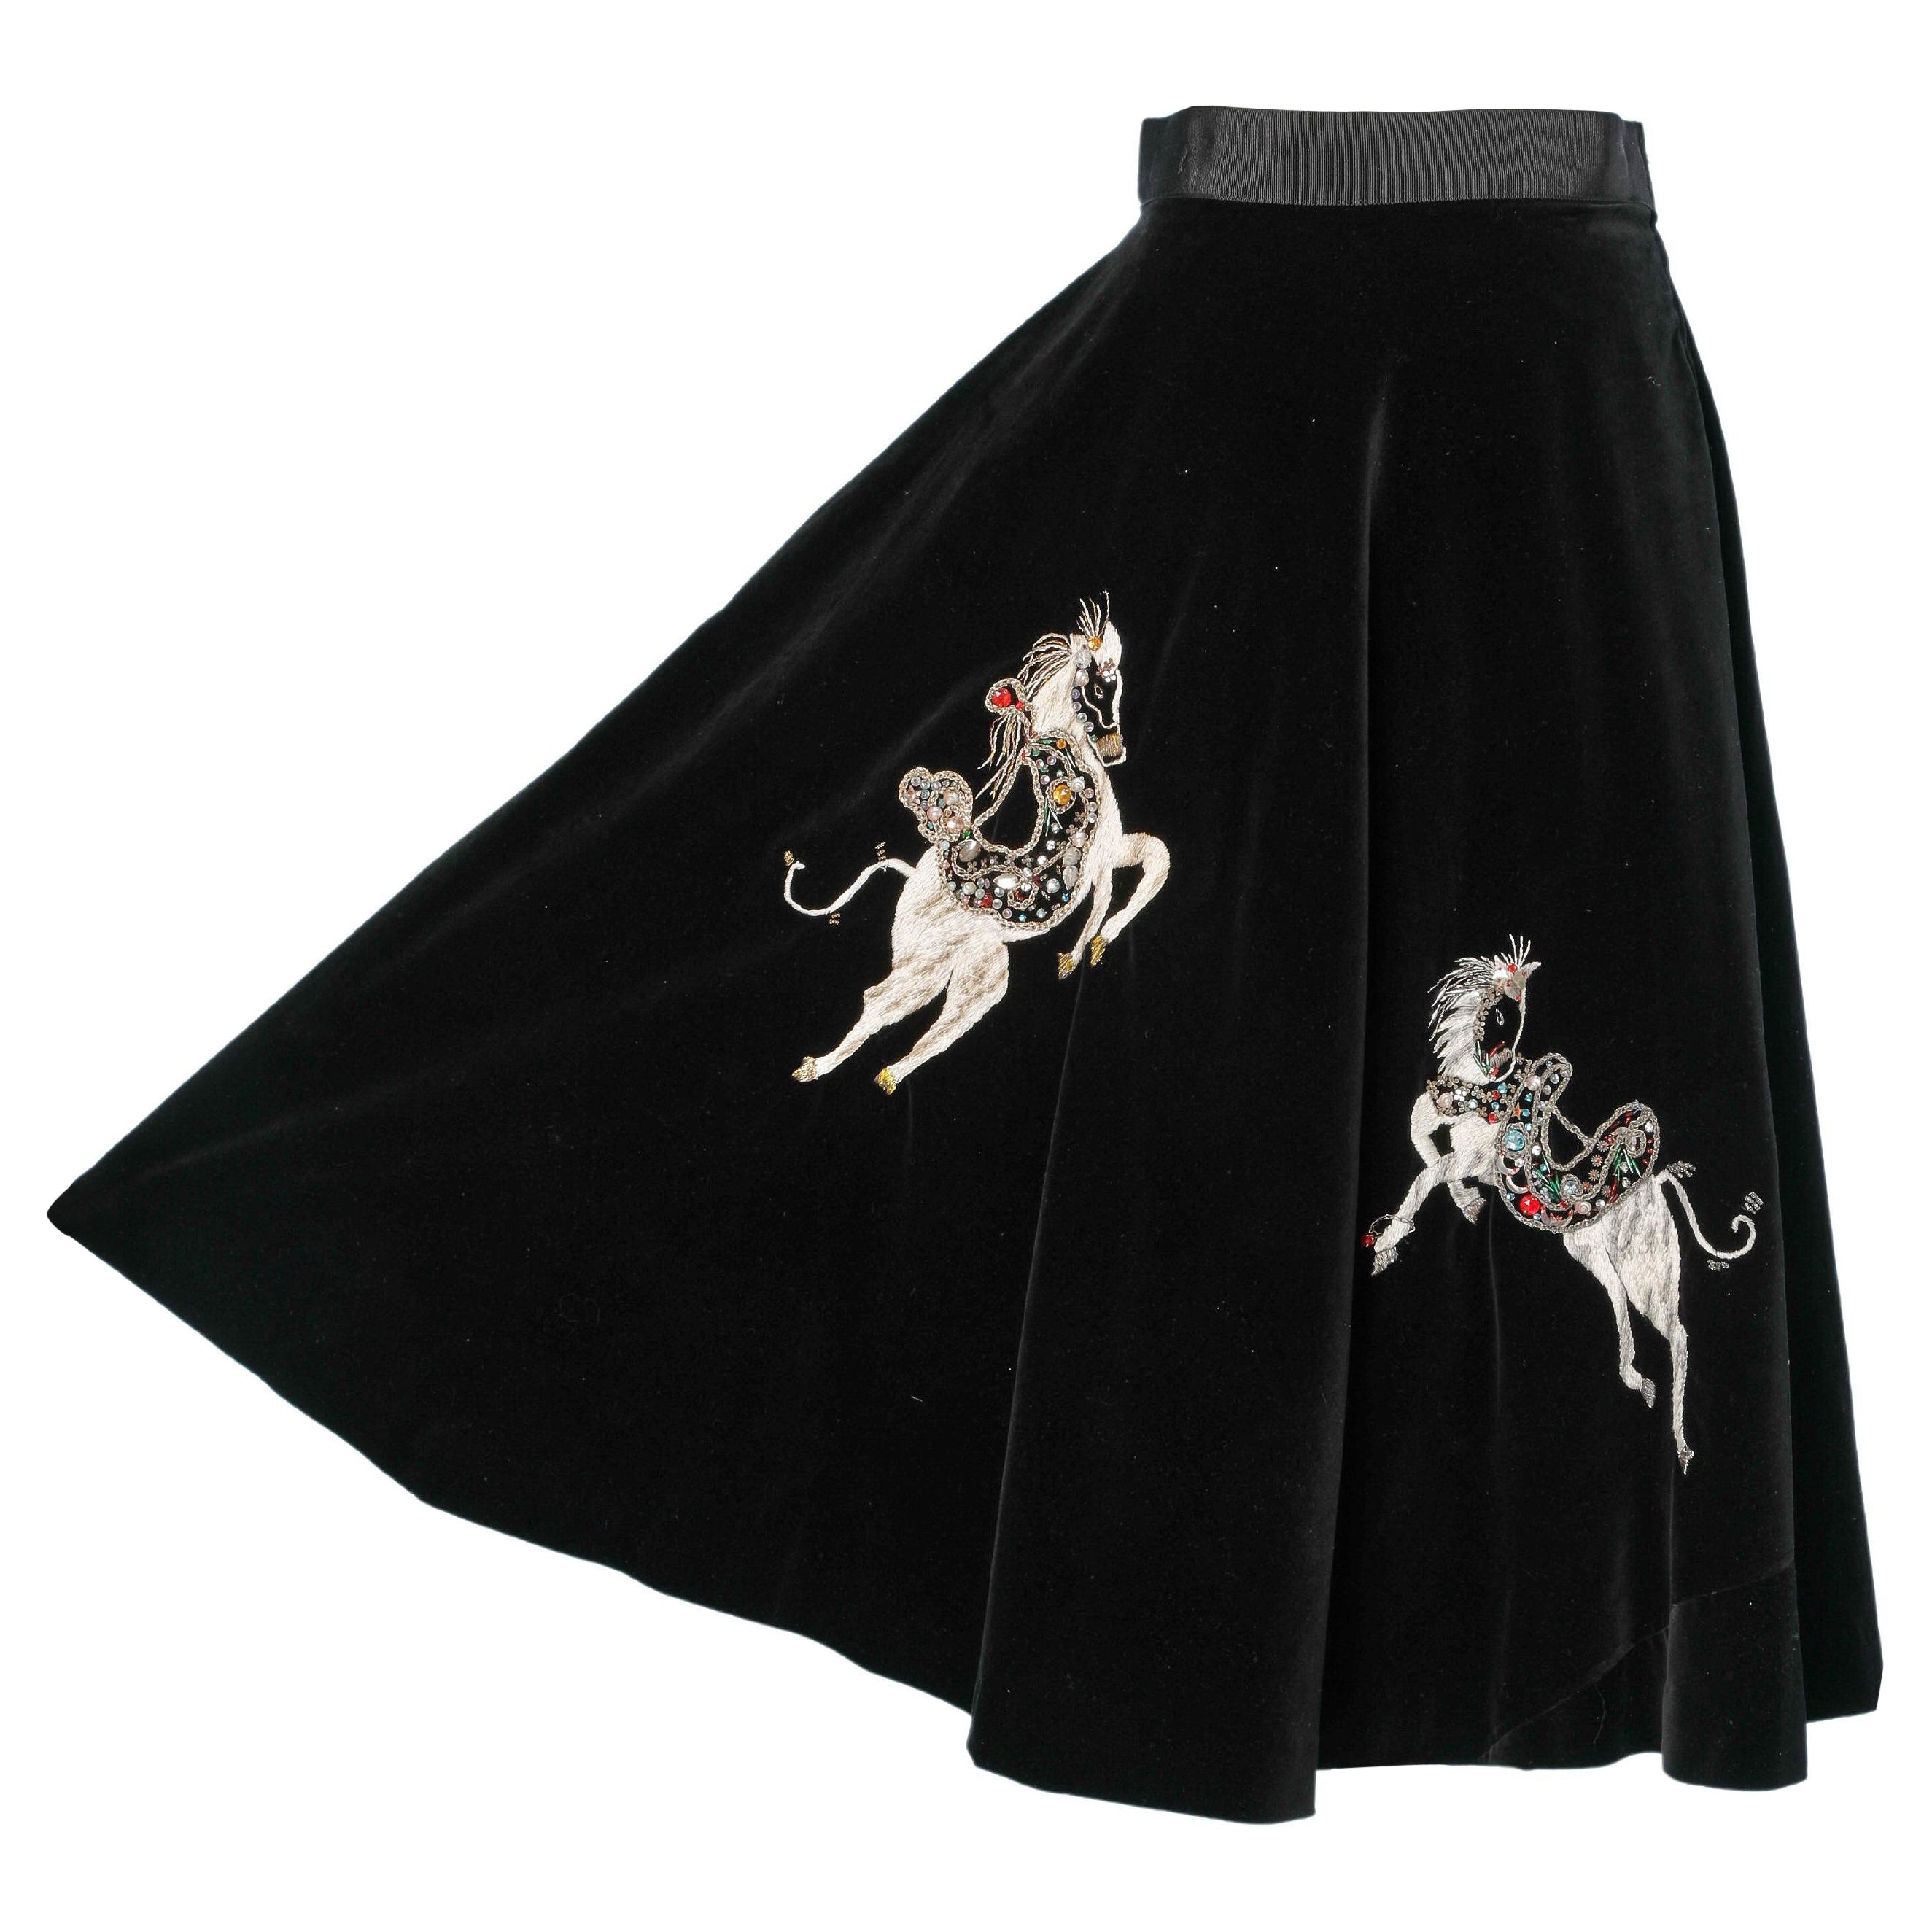 Black velvet circle skirt with horses embroidered 